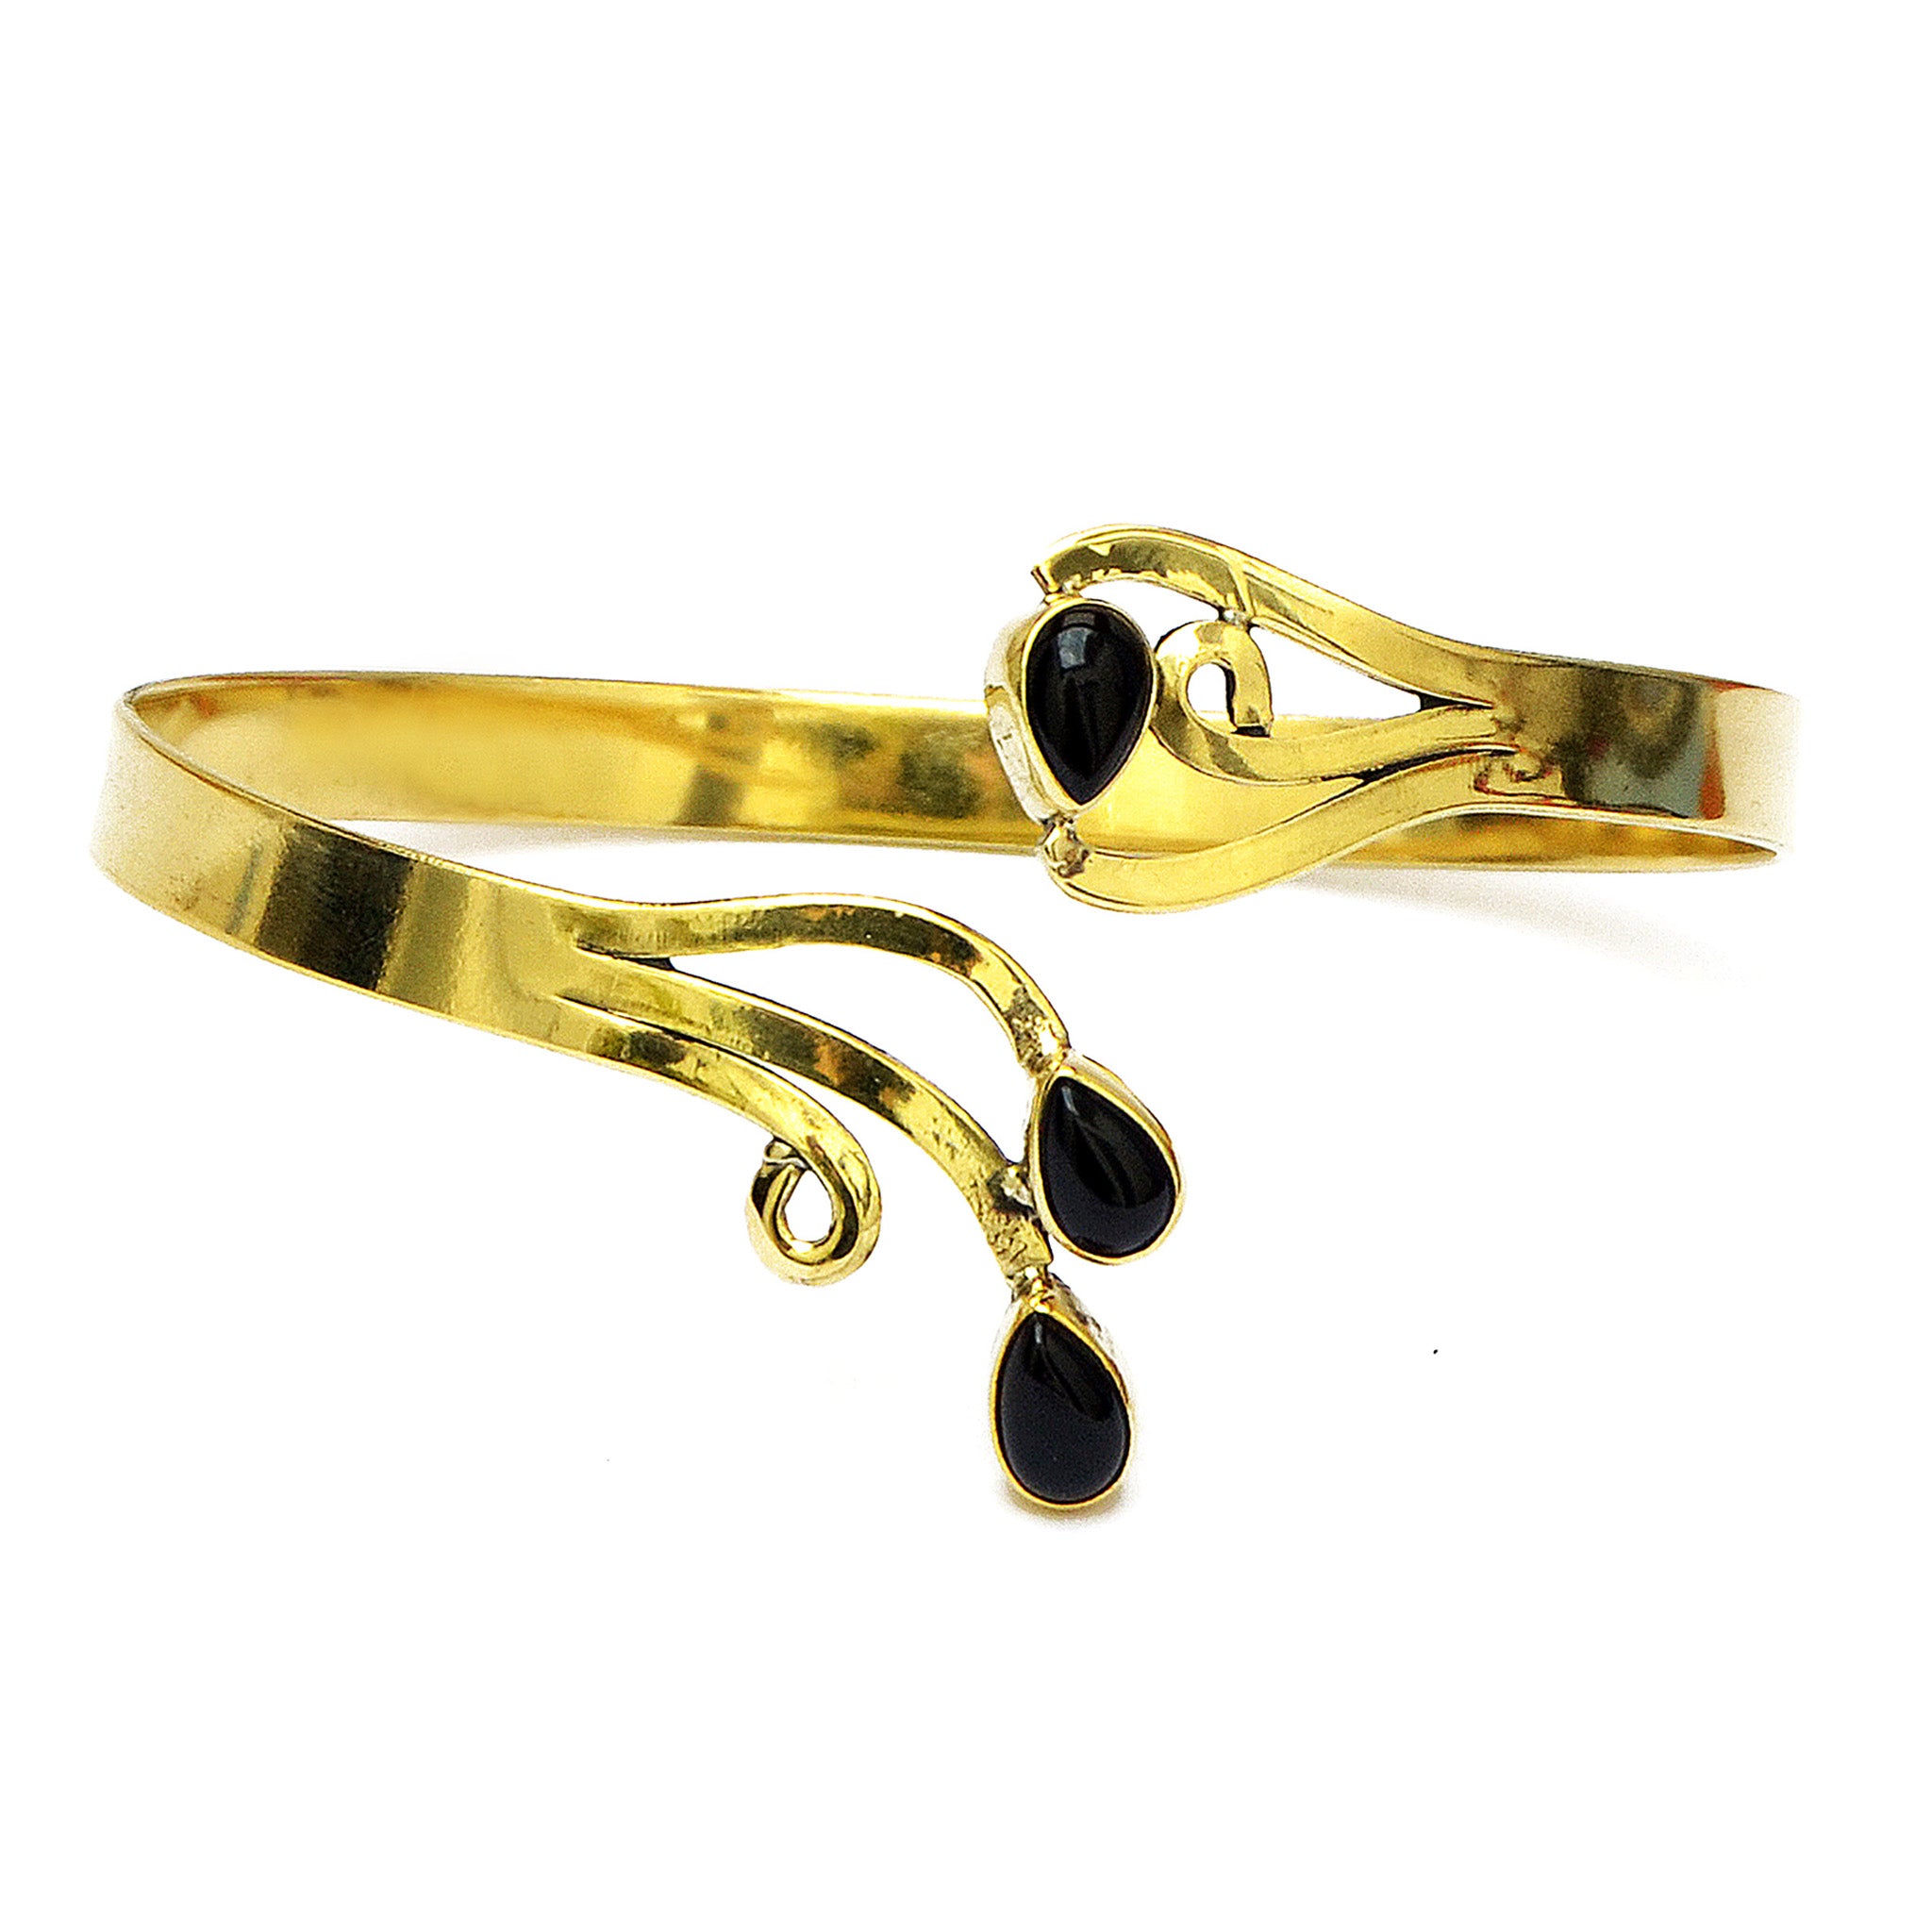 Boho gypsy brass bracelet with black onyx stones